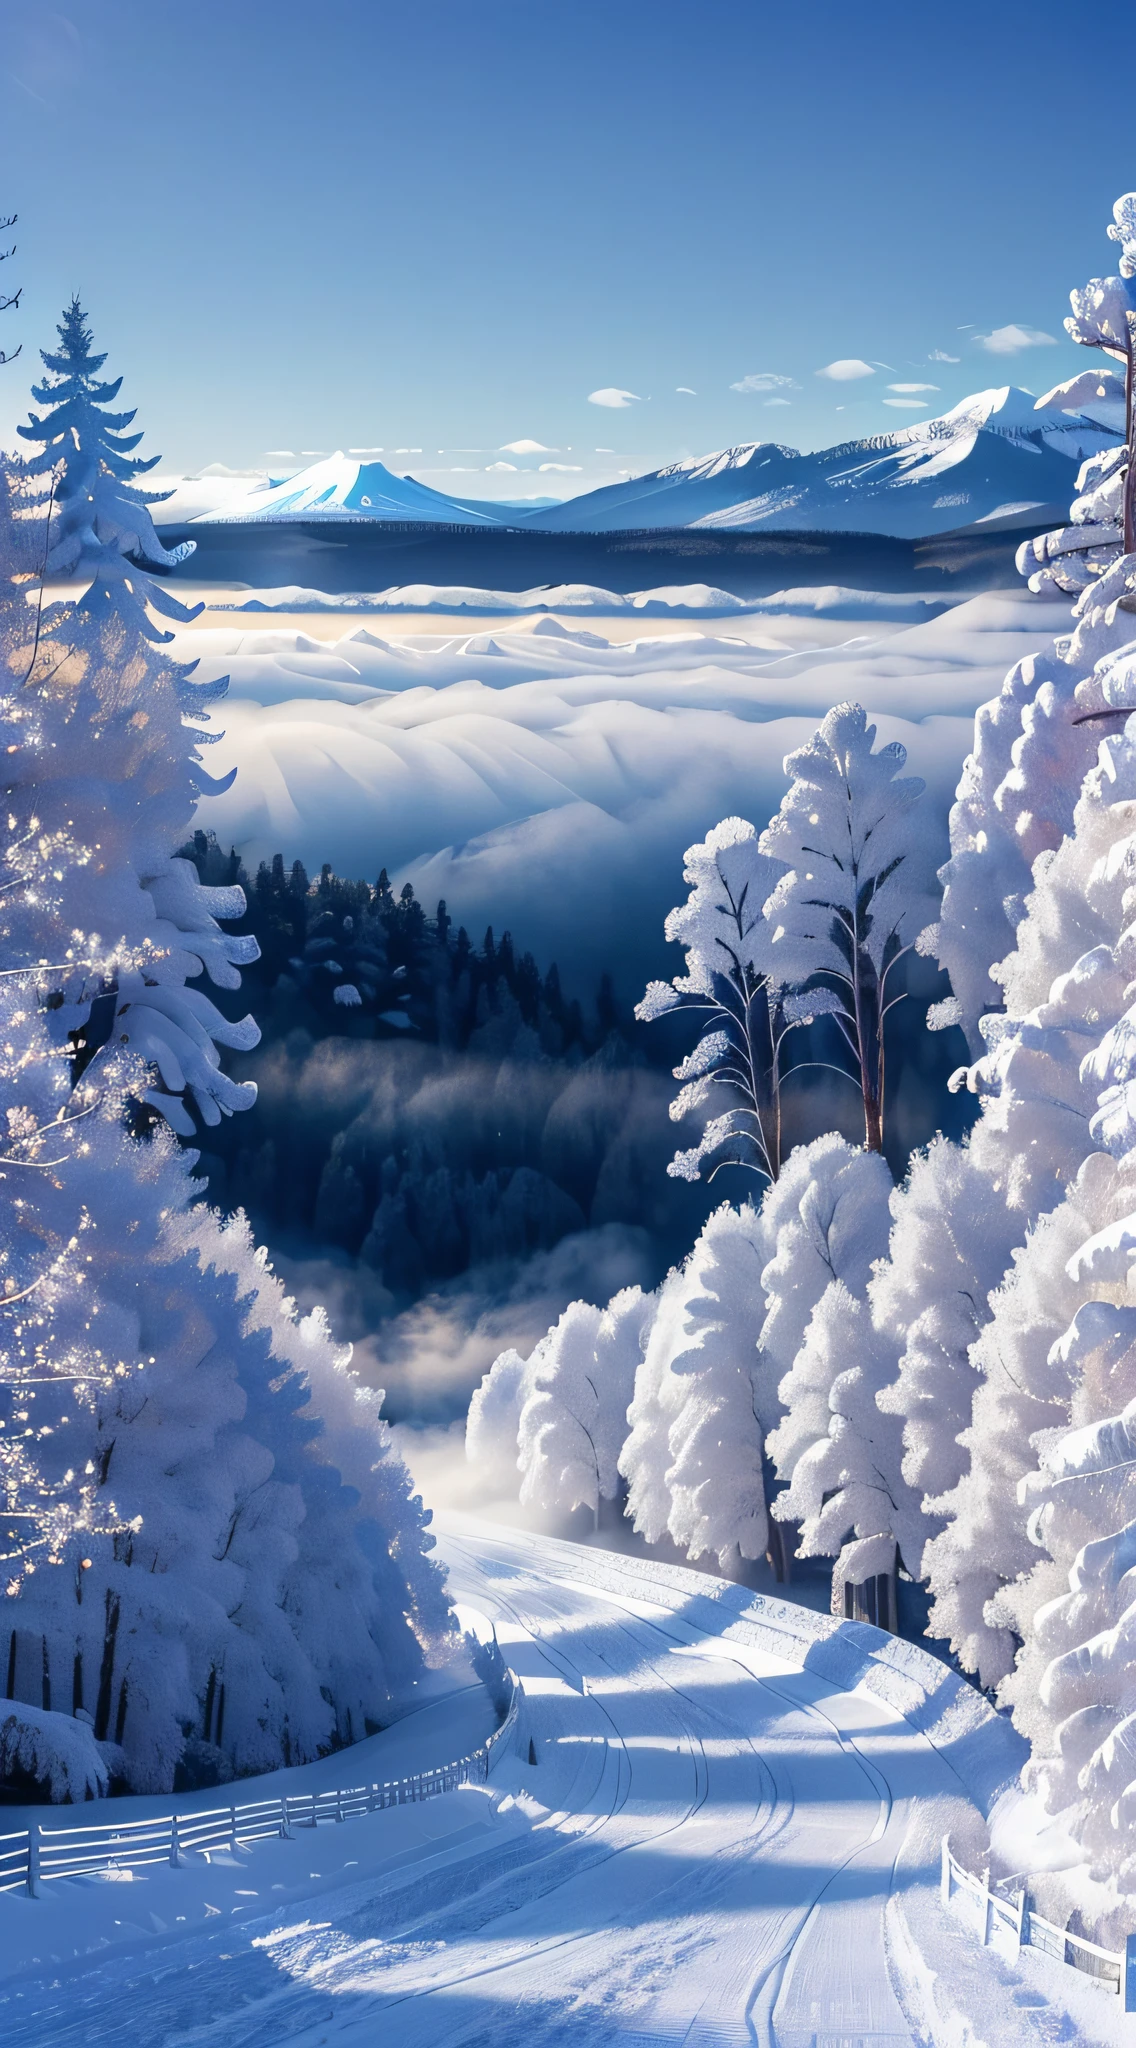 傑作、最高品質、超現実的な、フォトリアリスティック、真冬の雪山の木々に霜が降り、暗い青空を背景にした美しさ、雪山を流れる霧、霜が降りた木々々純白の日本の着物を着た美しい長い銀髪の精霊の女性が寄り添っています